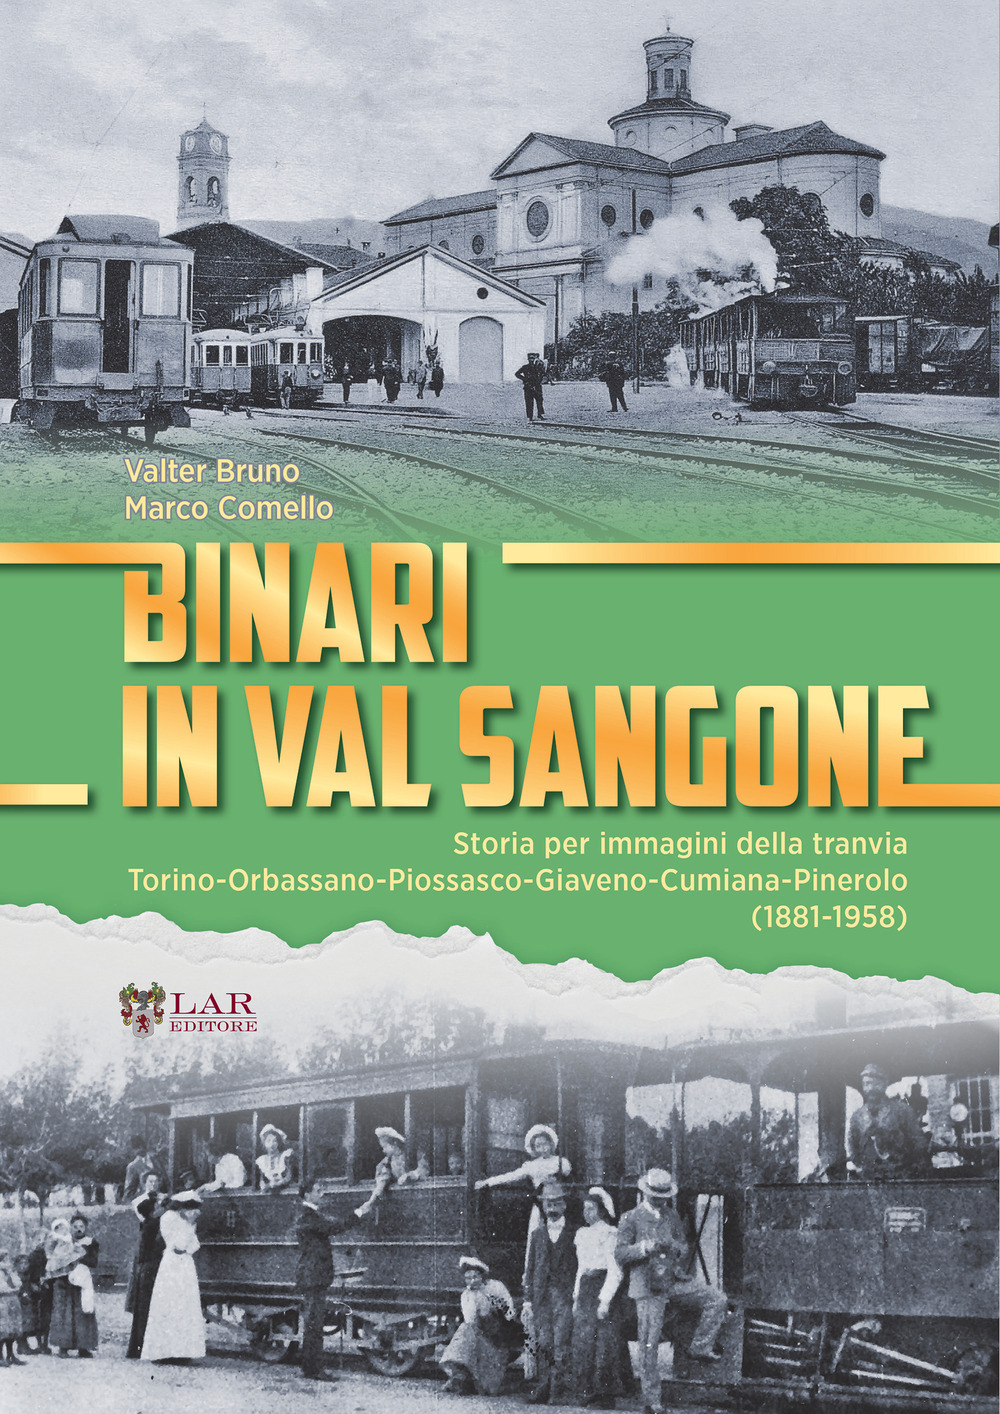 Binari in Val Sangone. Storia per immagini della tranvia Torino-Orbassano-Piossasco-Giaveno-Cumiana-Pinerolo (1881-1958)